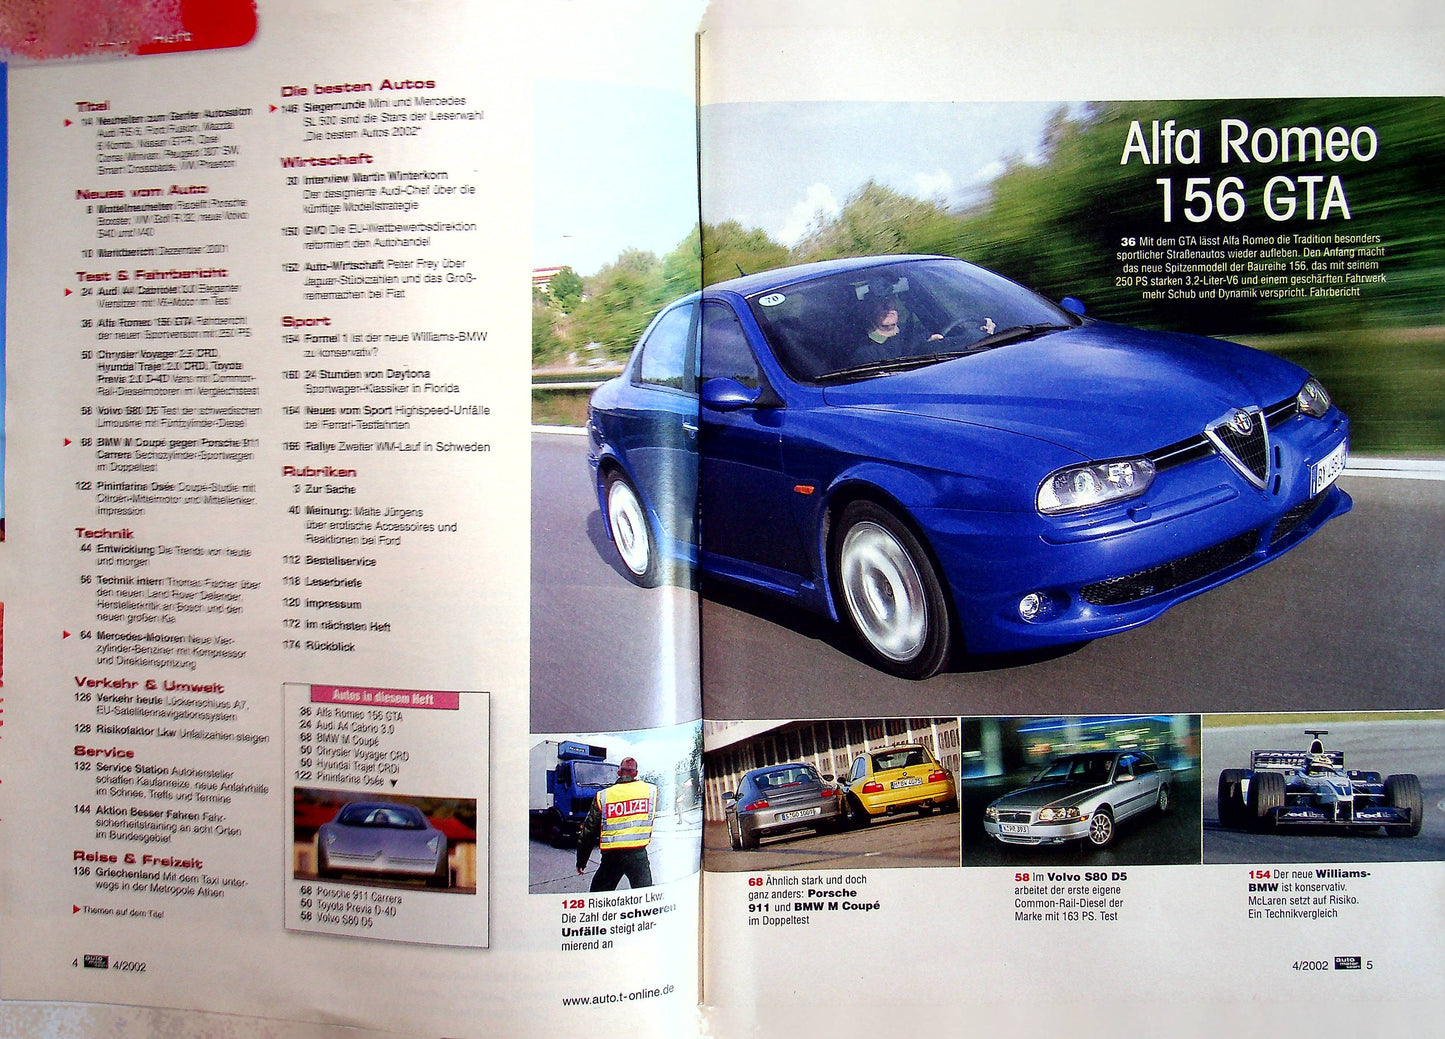 Auto Motor und Sport 04/2002